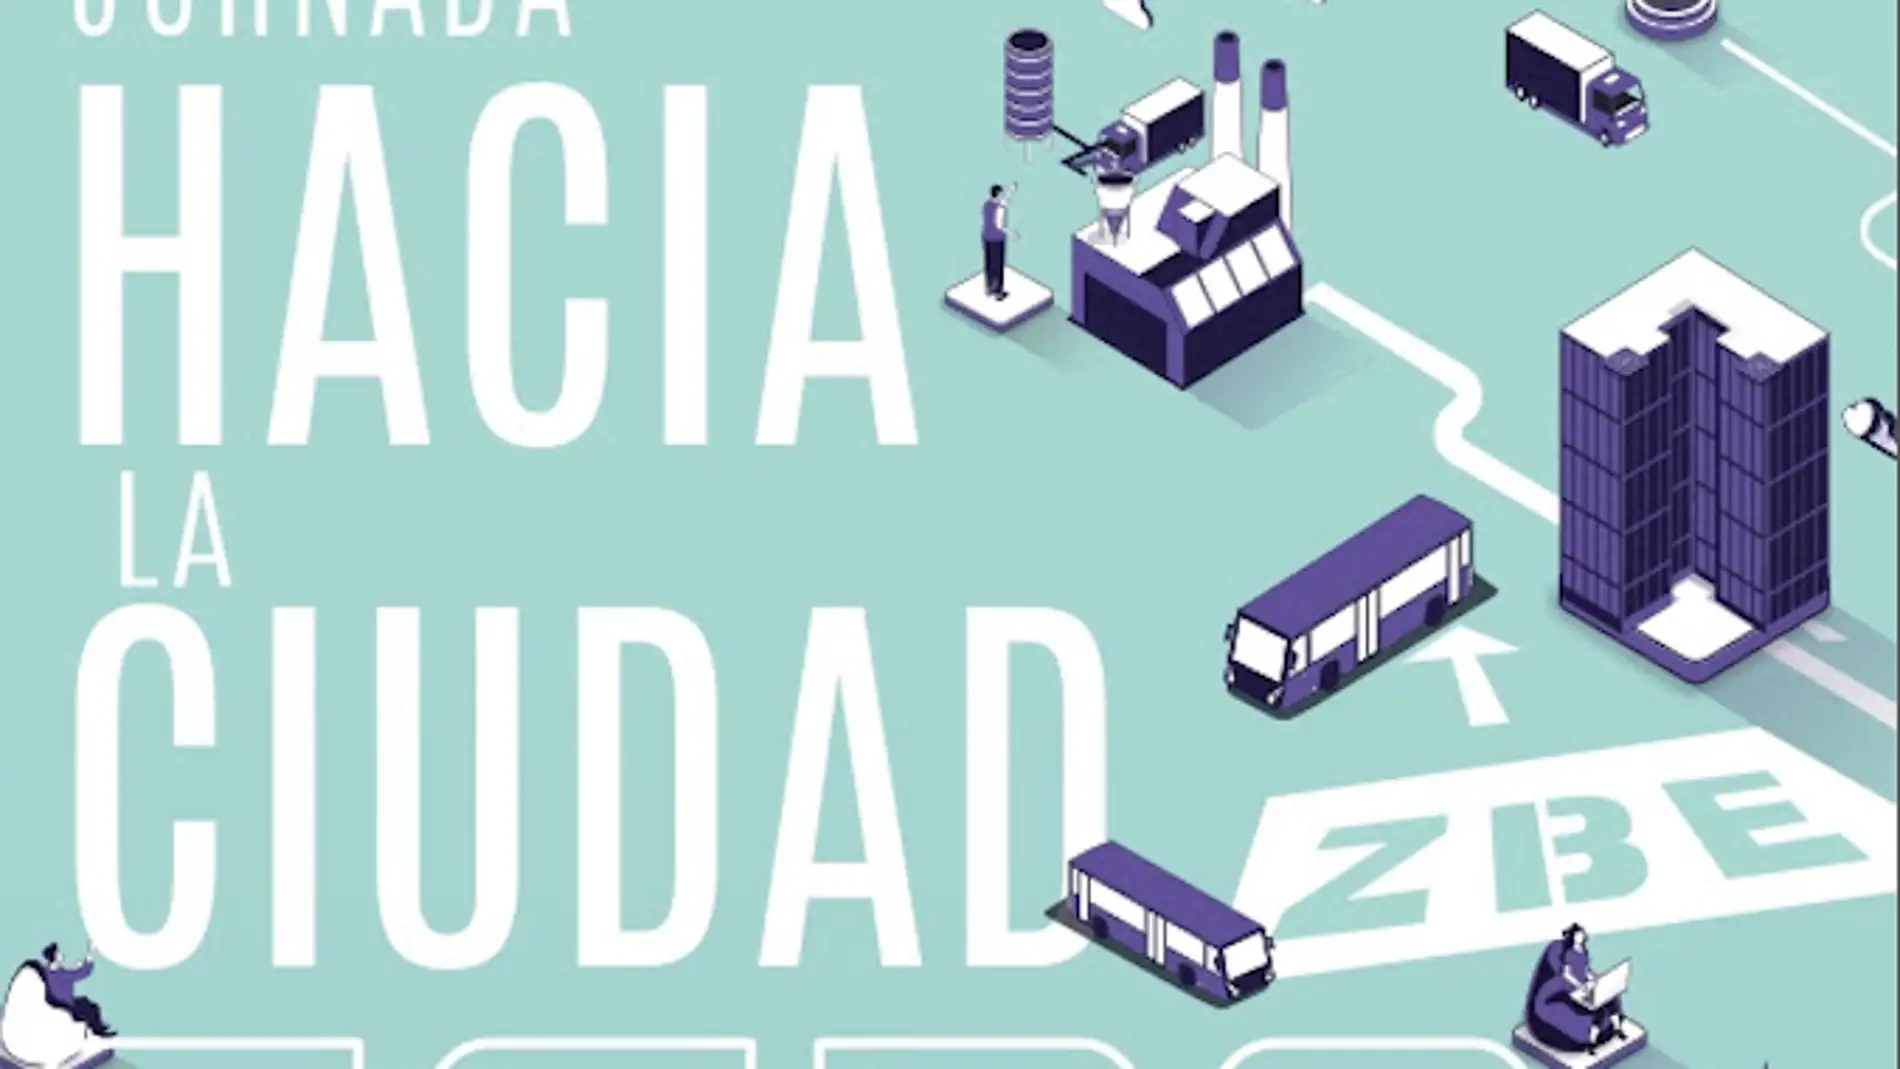 La Cátedra Vectalia de Movilidad de la Universidad de Alicante organiza jornada “Hacia la ciudad cero” en el MACA